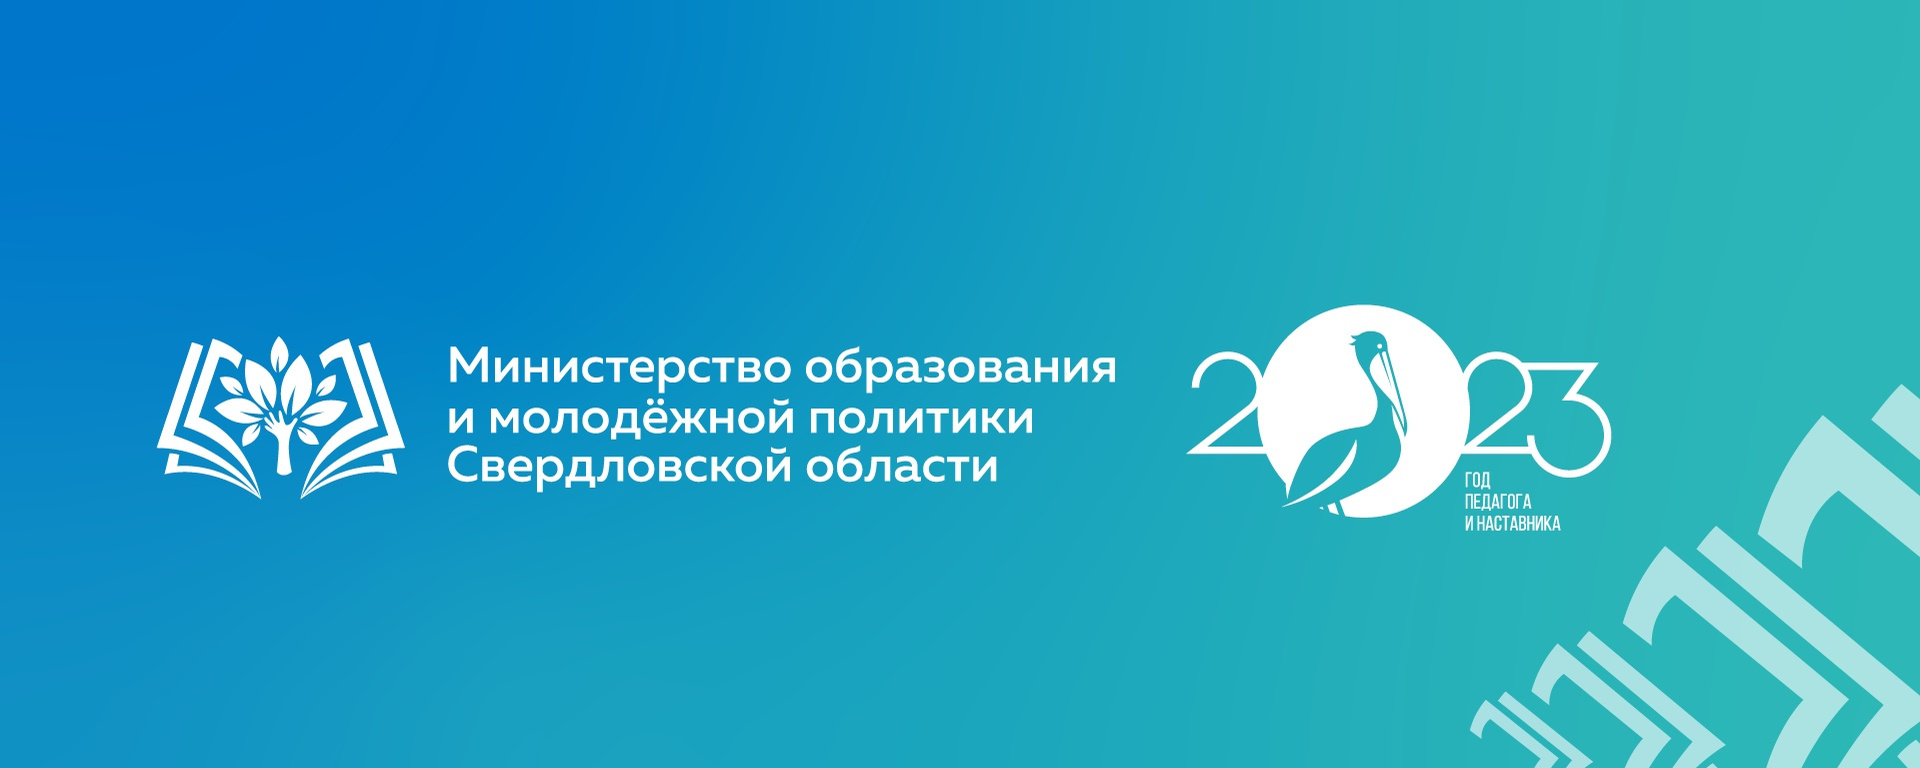 Официальная страница Министерства образования в социальной сети «ВКонтакте» в сети «Интернет»